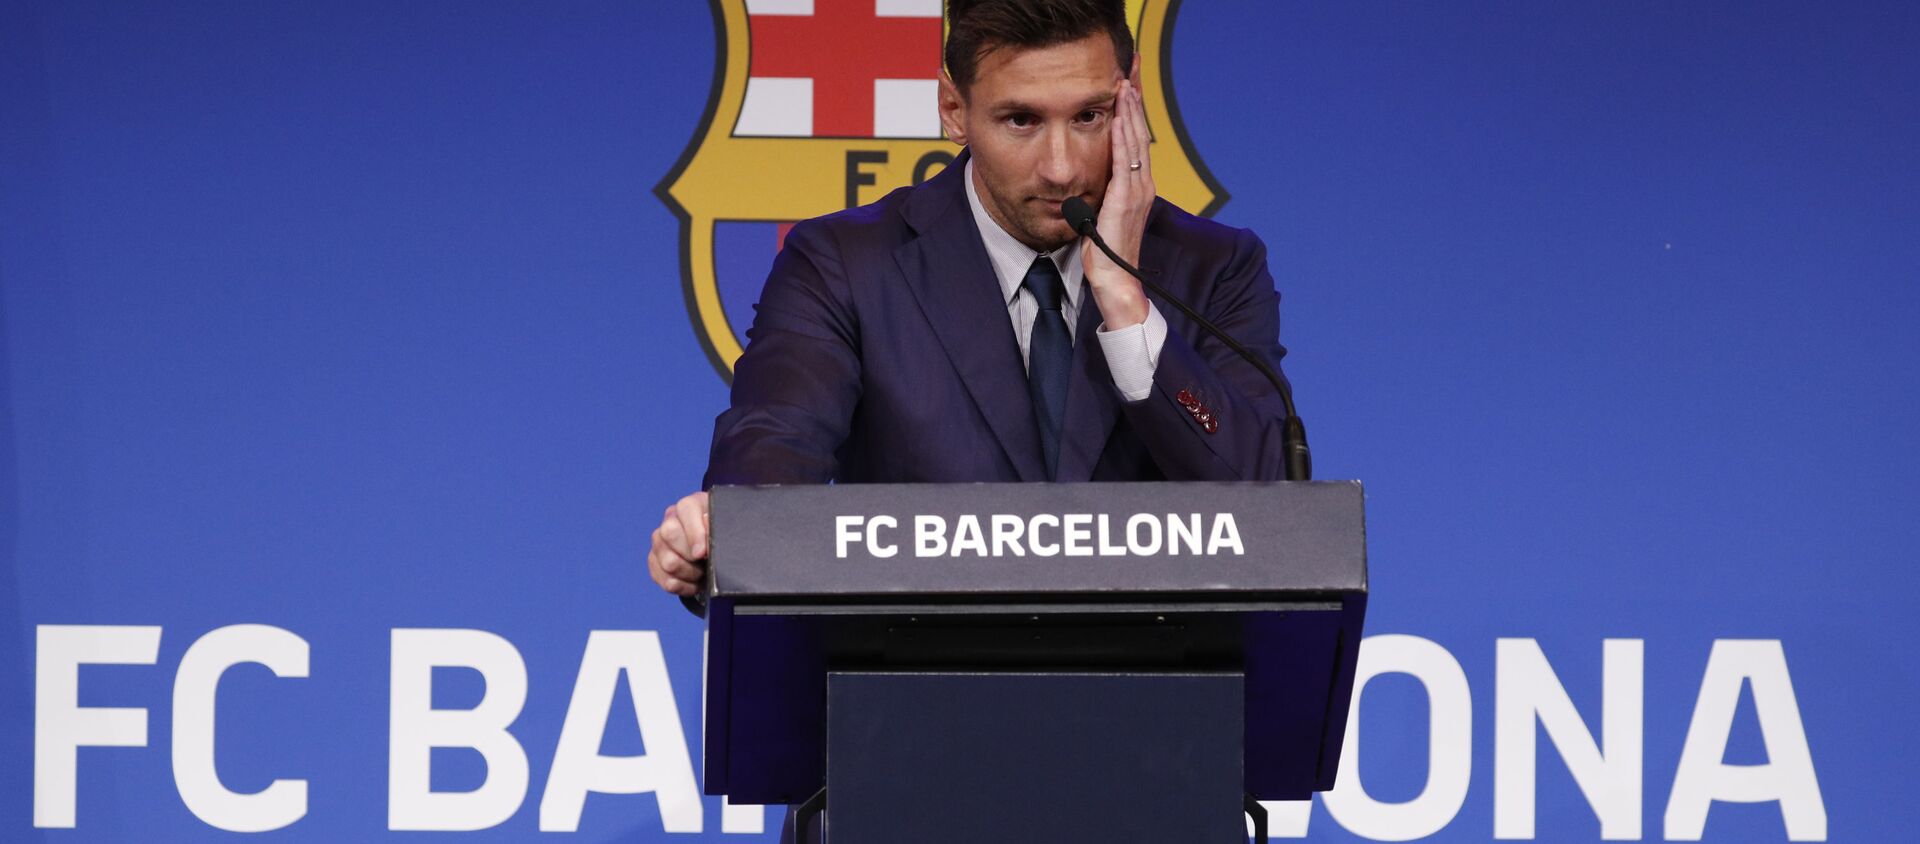 Cầu thủ bóng đá Lionel Messi trong cuộc họp báo ở Barcelona  - Sputnik Việt Nam, 1920, 08.08.2021